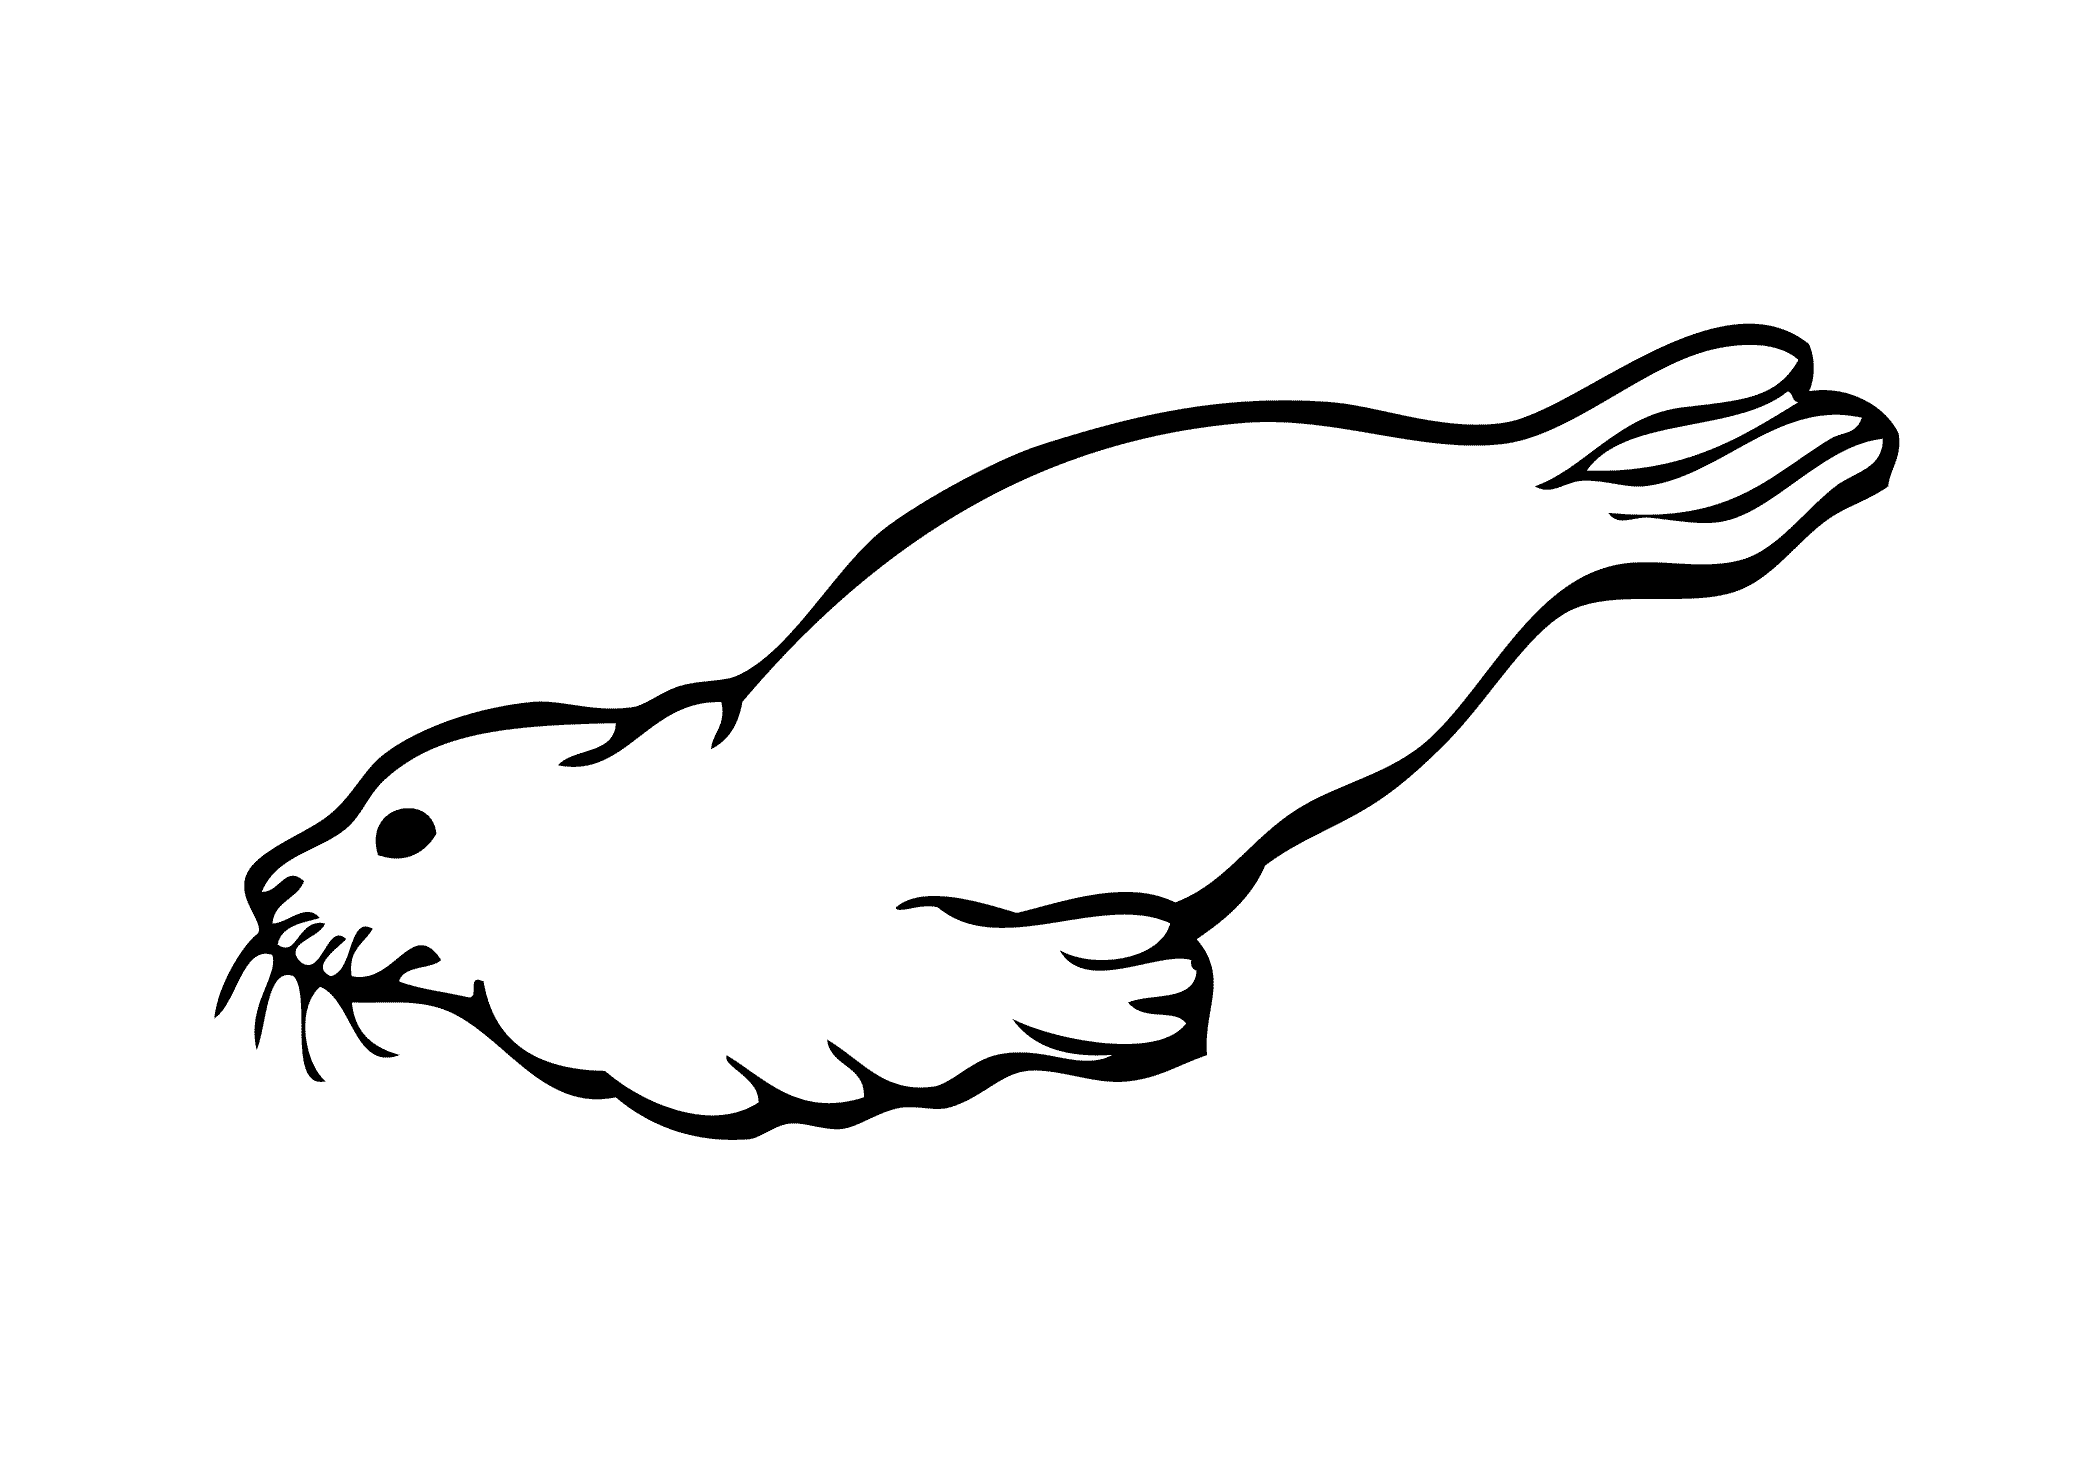 Harp Seal coloring #12, Download drawings